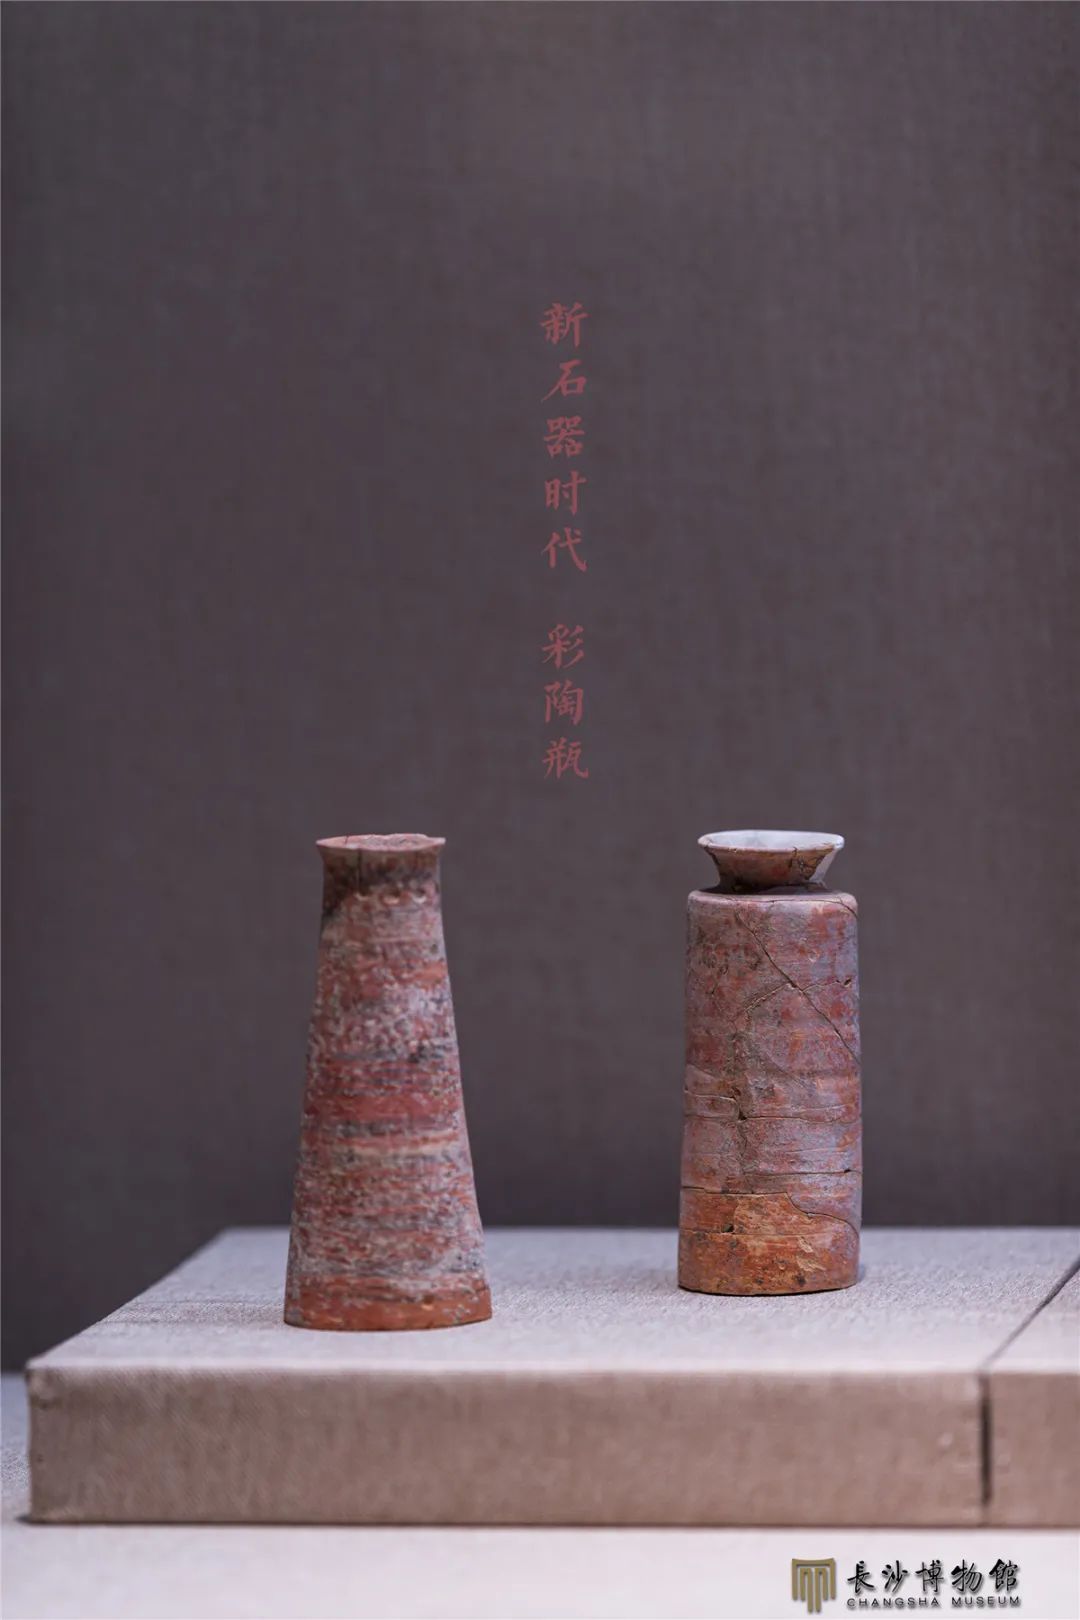 彩陶瓶 新石器时代大溪文化（距今约6300—5300年） 澧县城头山遗址出土 湖南省文物考古研究所藏